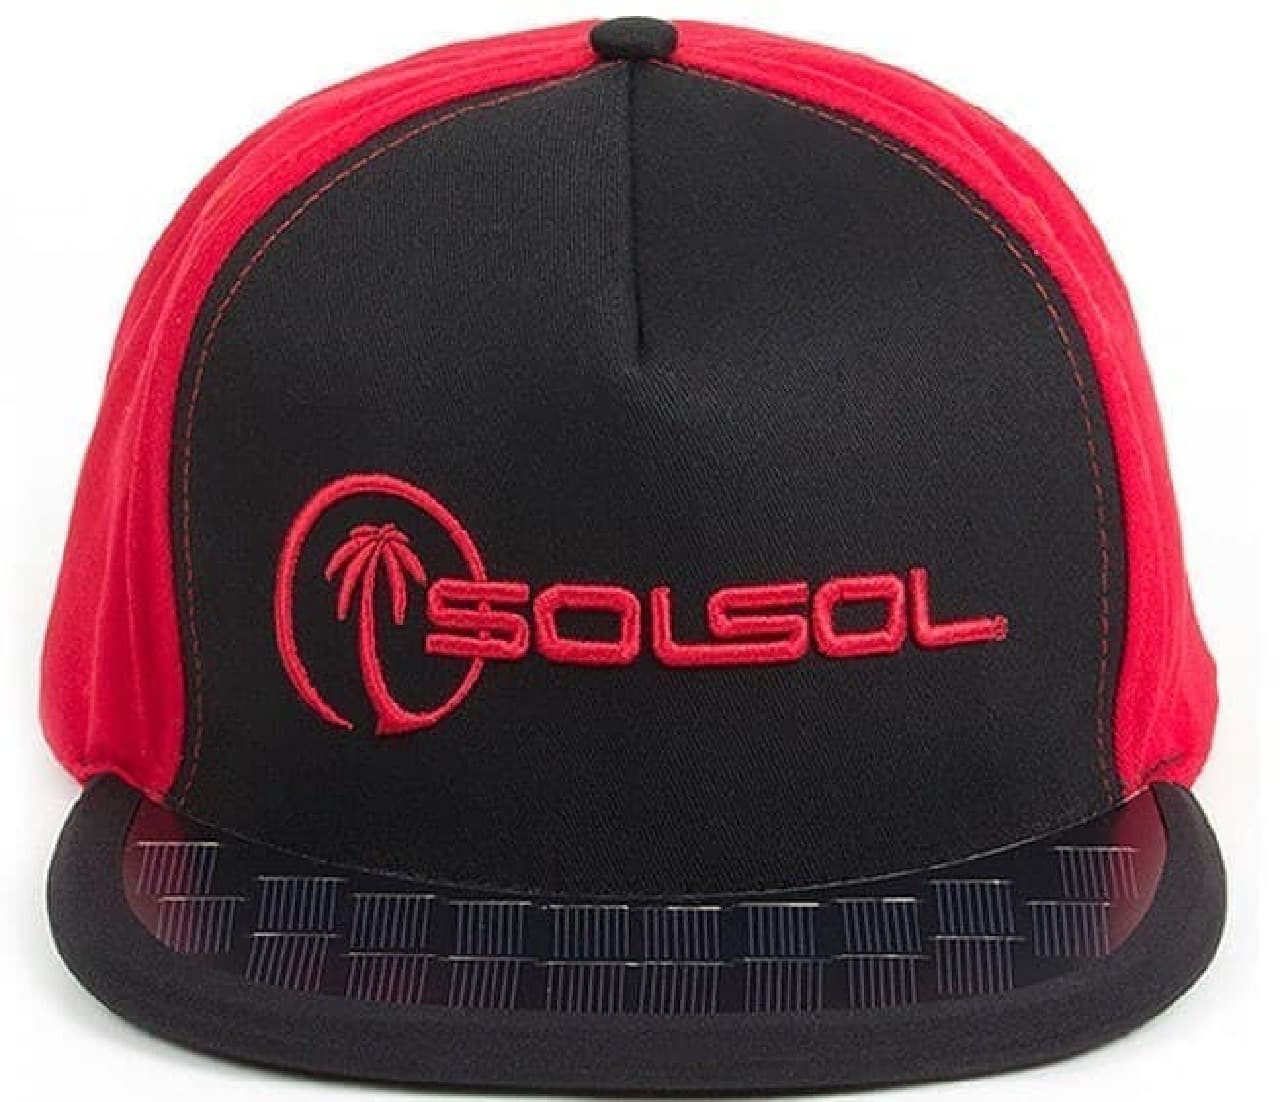 ソーラーパネル付きの帽子「SolSol」